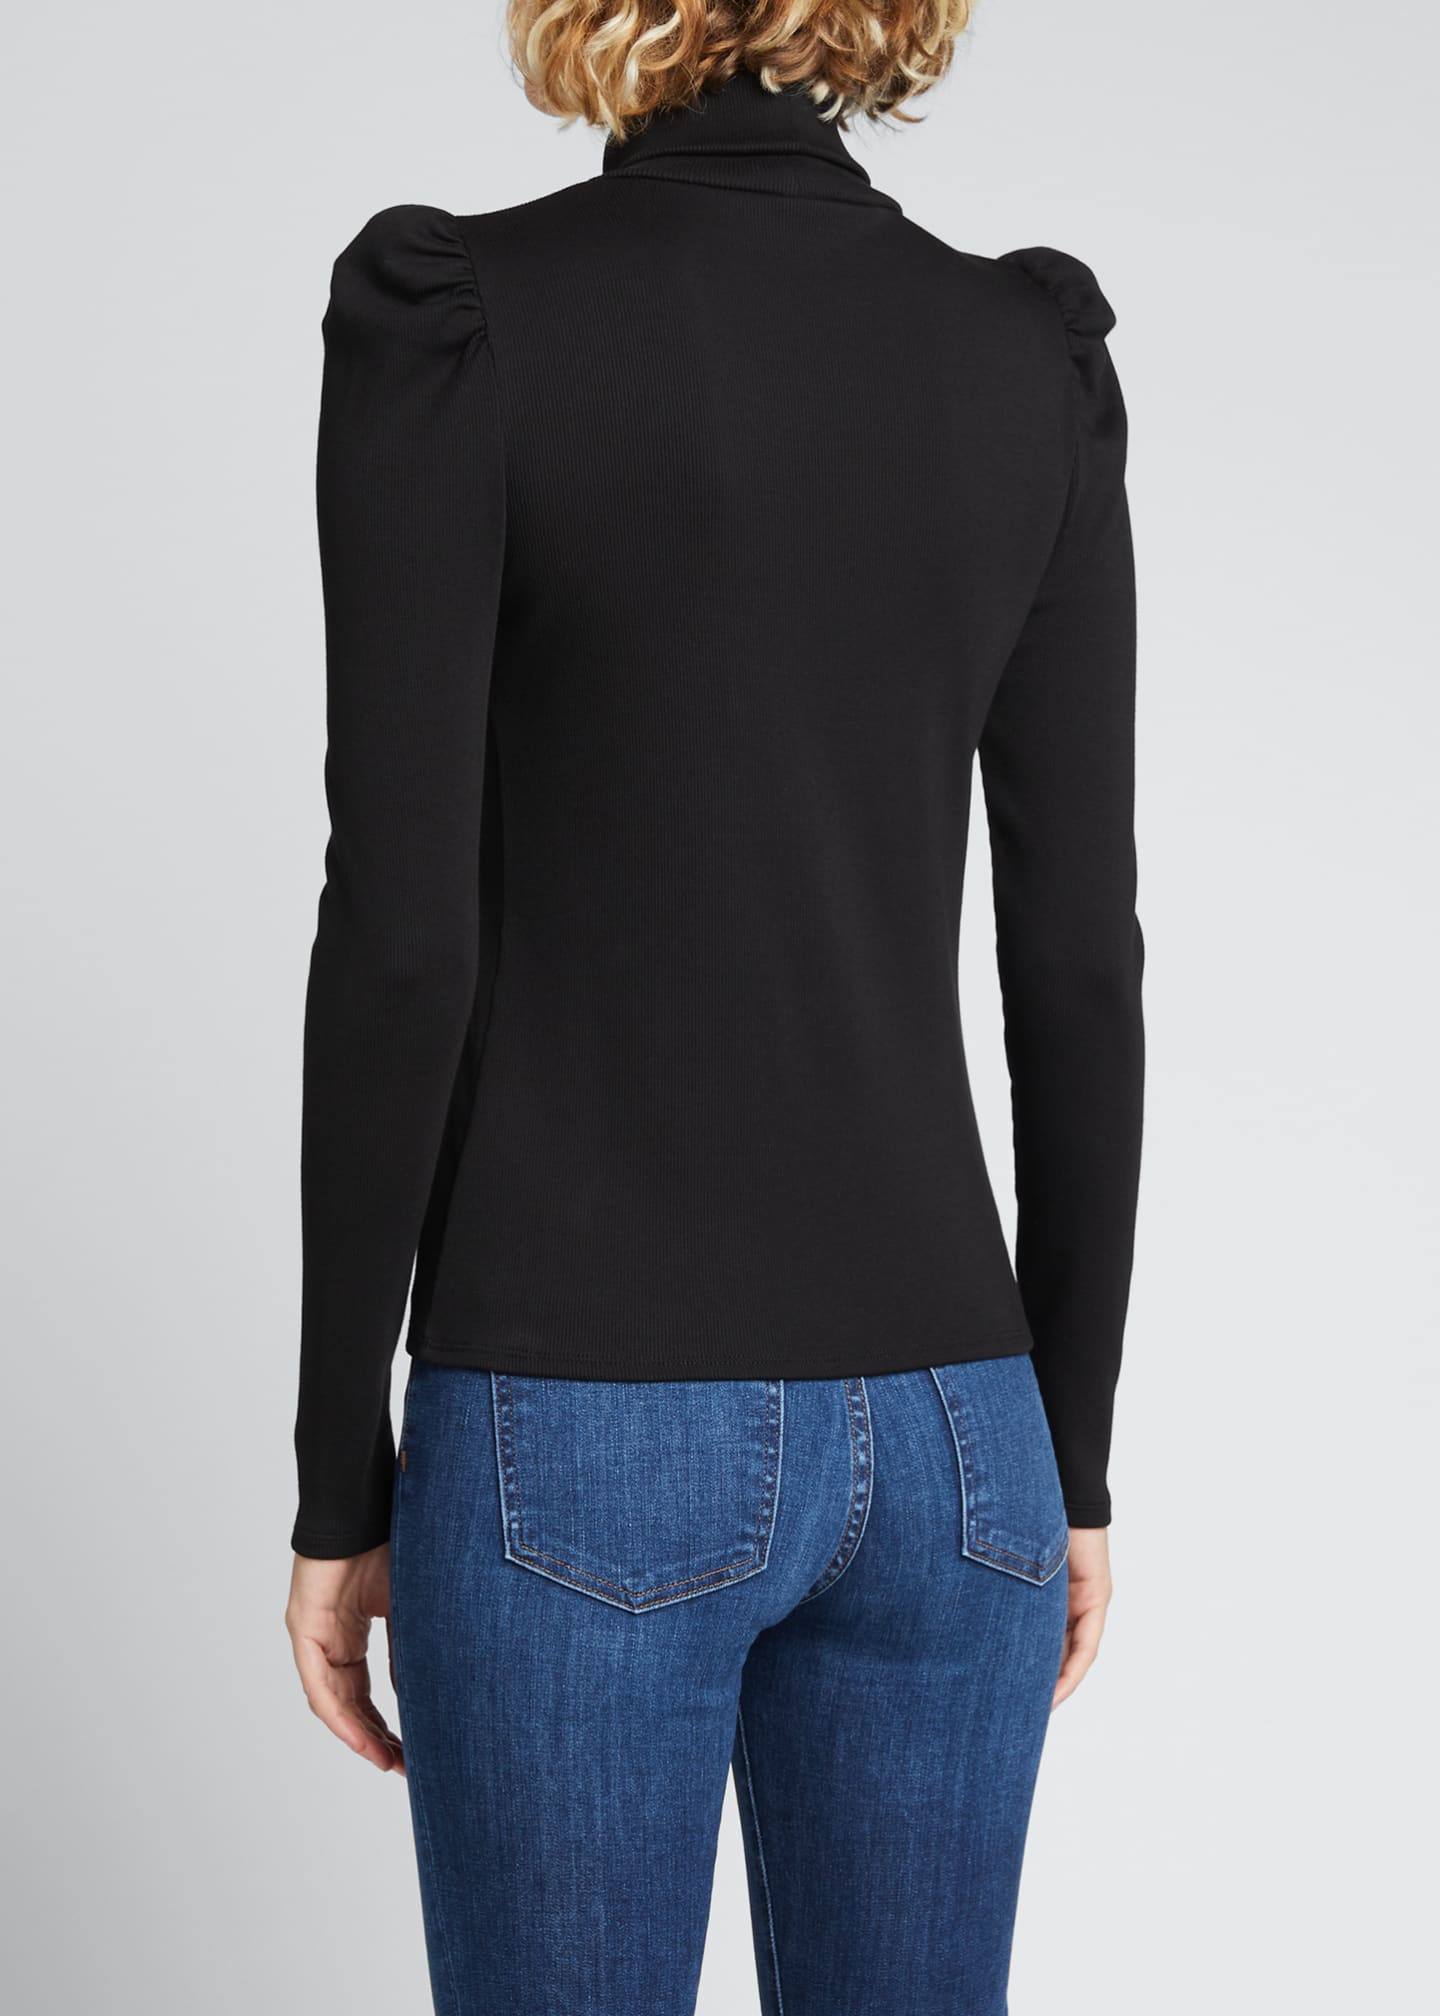 Veronica Beard Jeans Cedar Turtleneck Sweater - Bergdorf Goodman